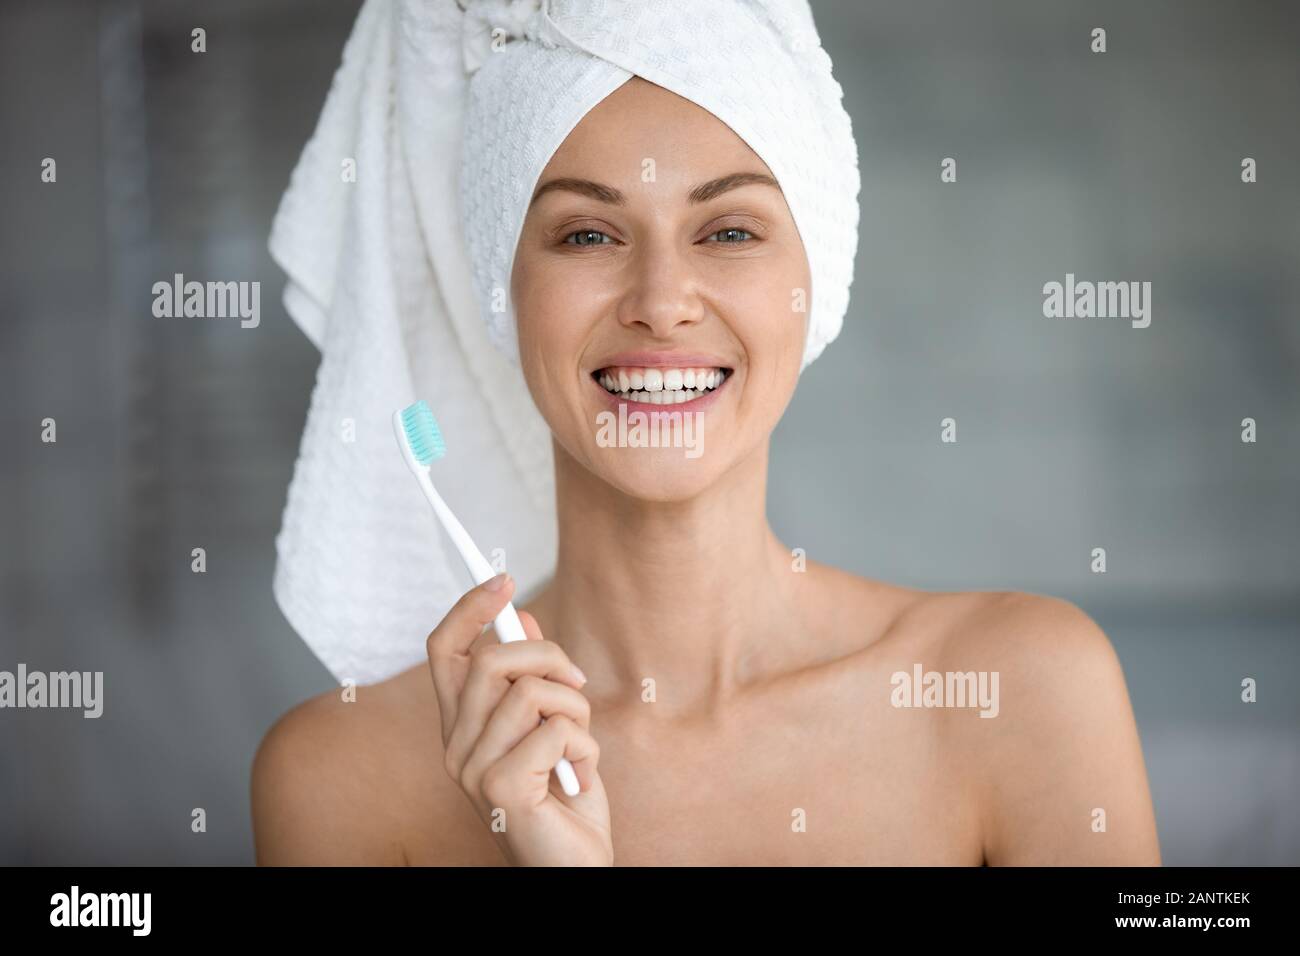 Disparo a la cabeza retrato Mujer hermosa con sonrisa saludable sujetando el cepillo de dientes Foto de stock